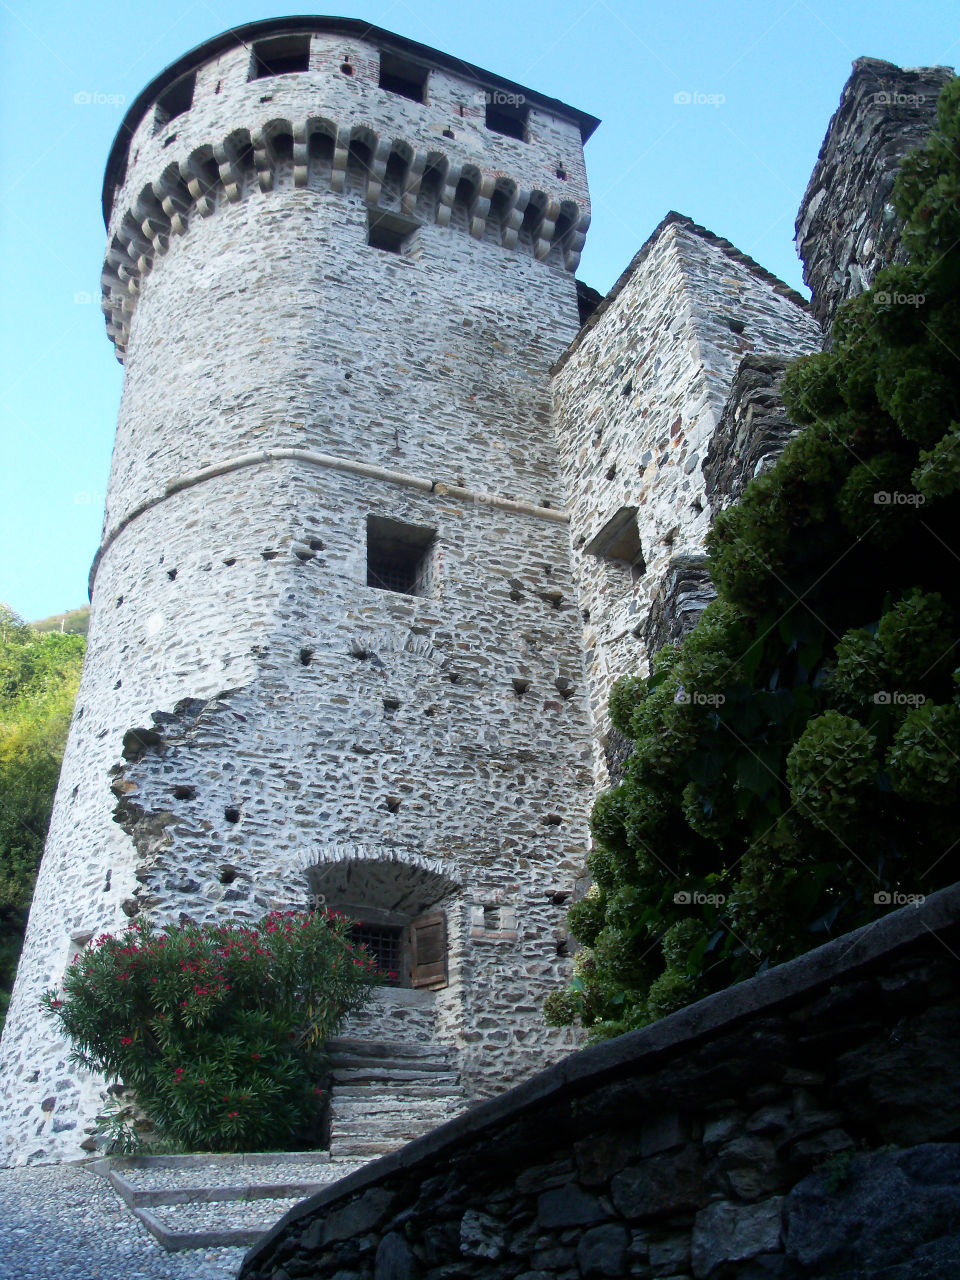 Vogogna's castle